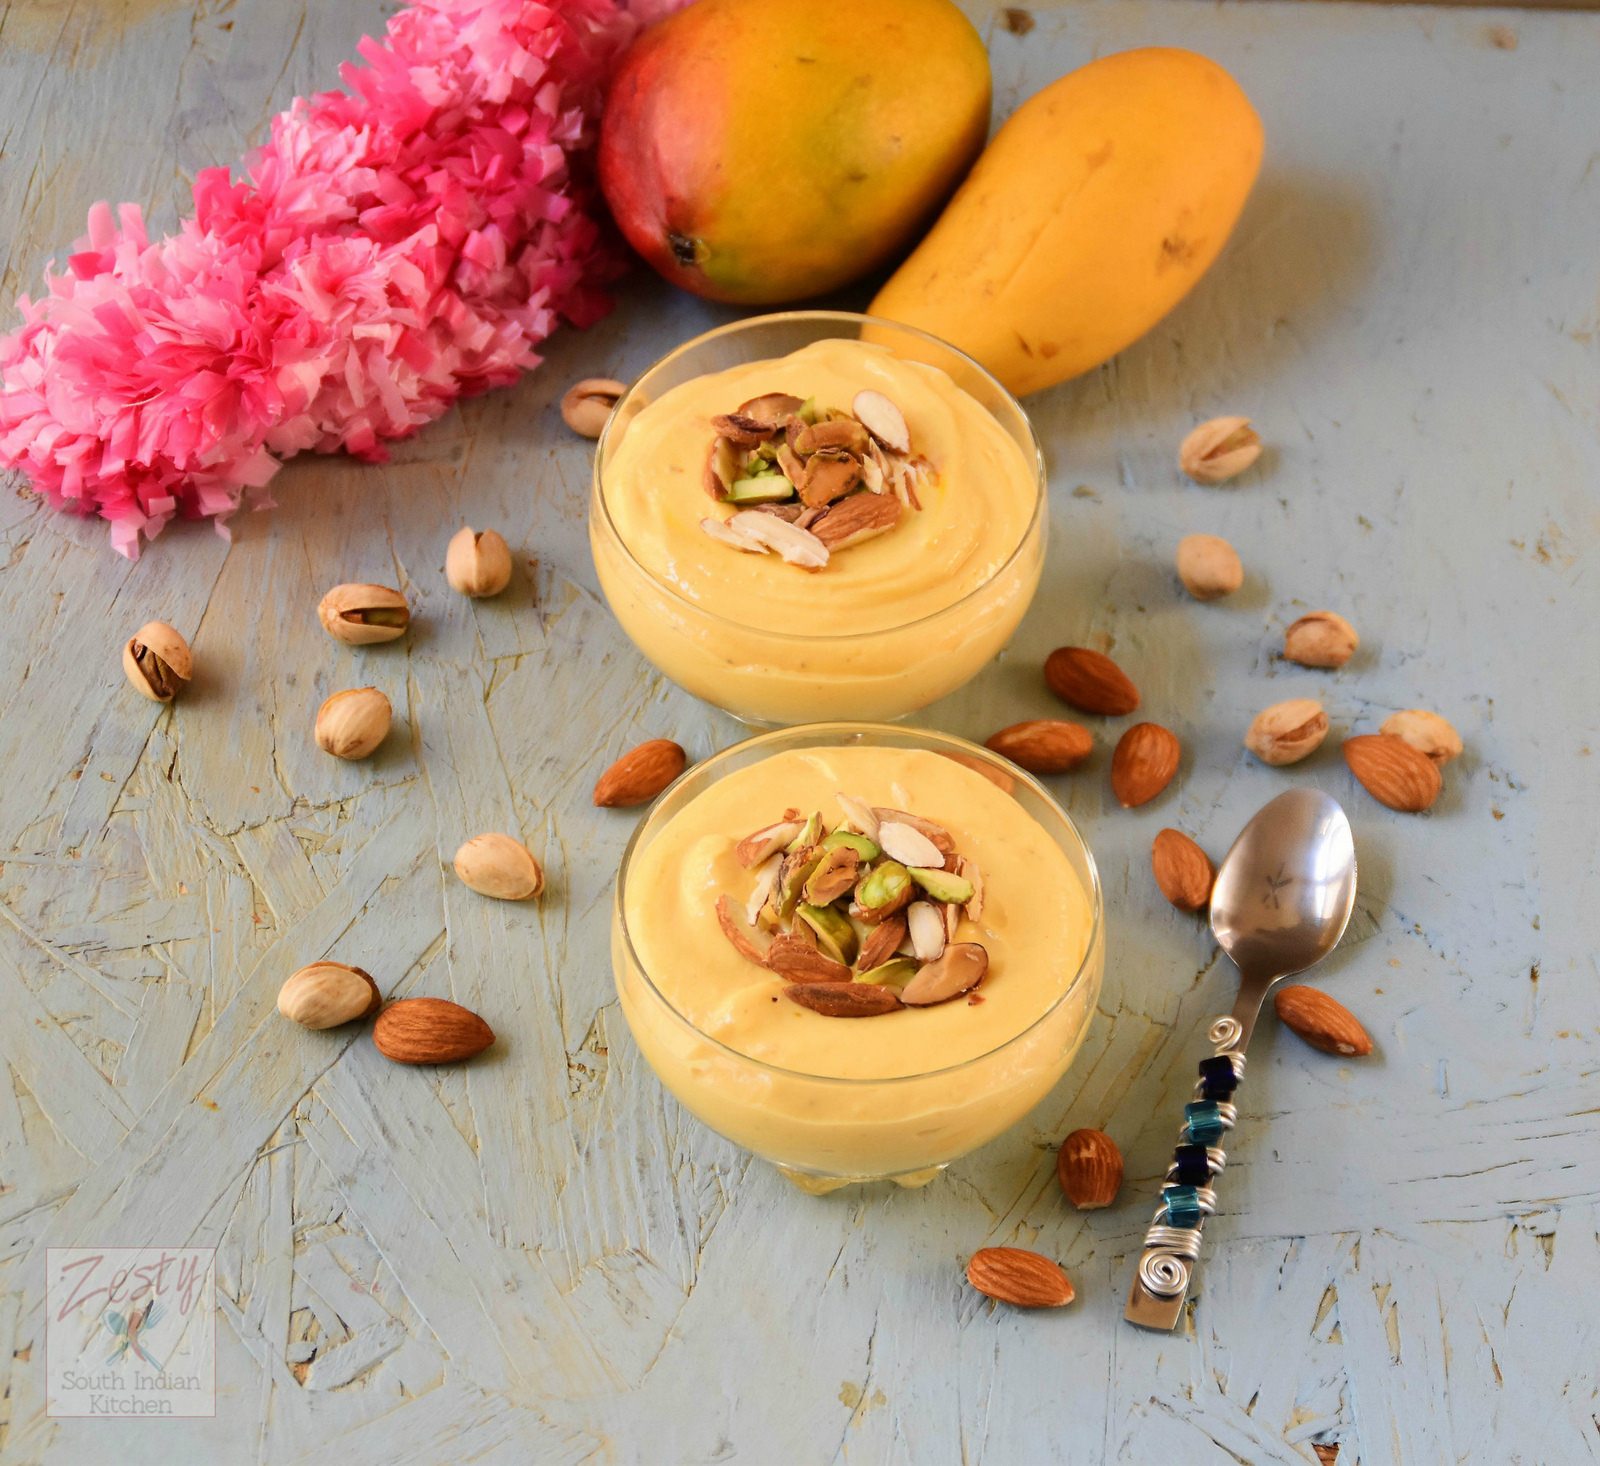 Amrakhand: Indian Mango Yogurt